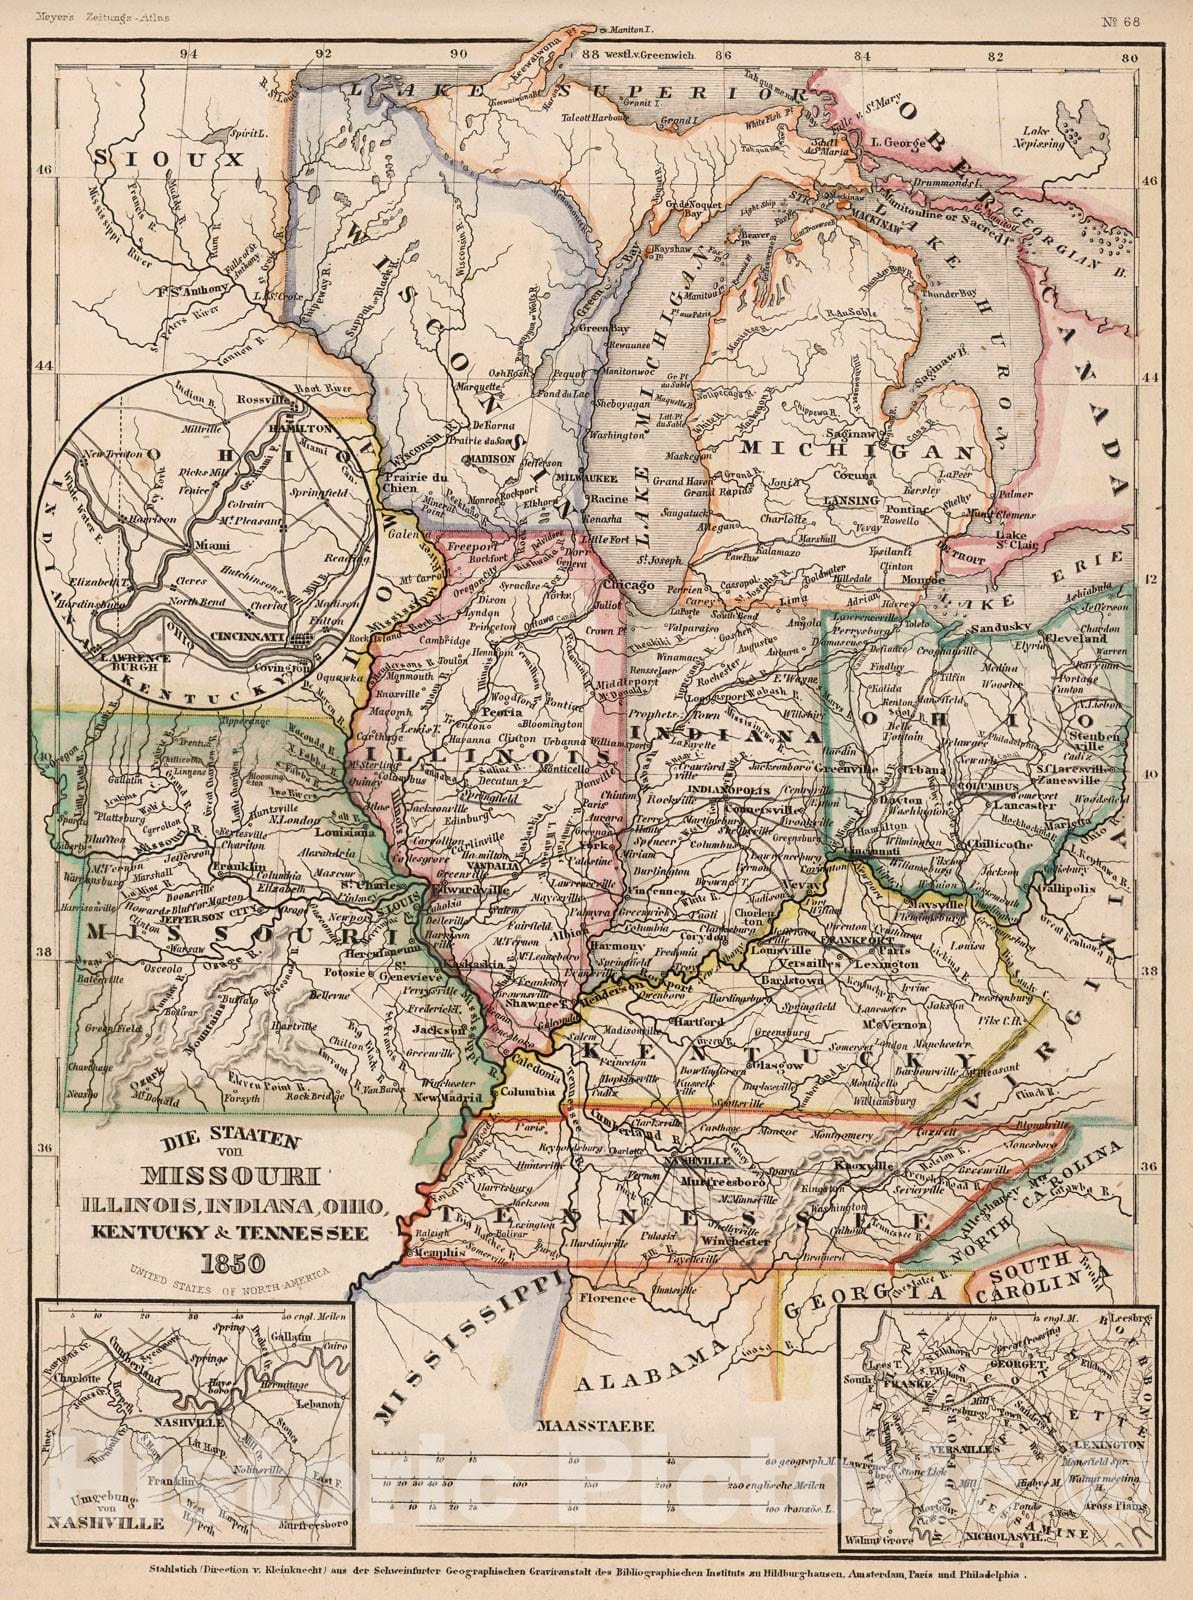 Historic Map : Die staaten von Missouri, Illinois, Indiana, Ohio,Kentucky & Tennessee 1850, 1852, Vintage Wall Decor